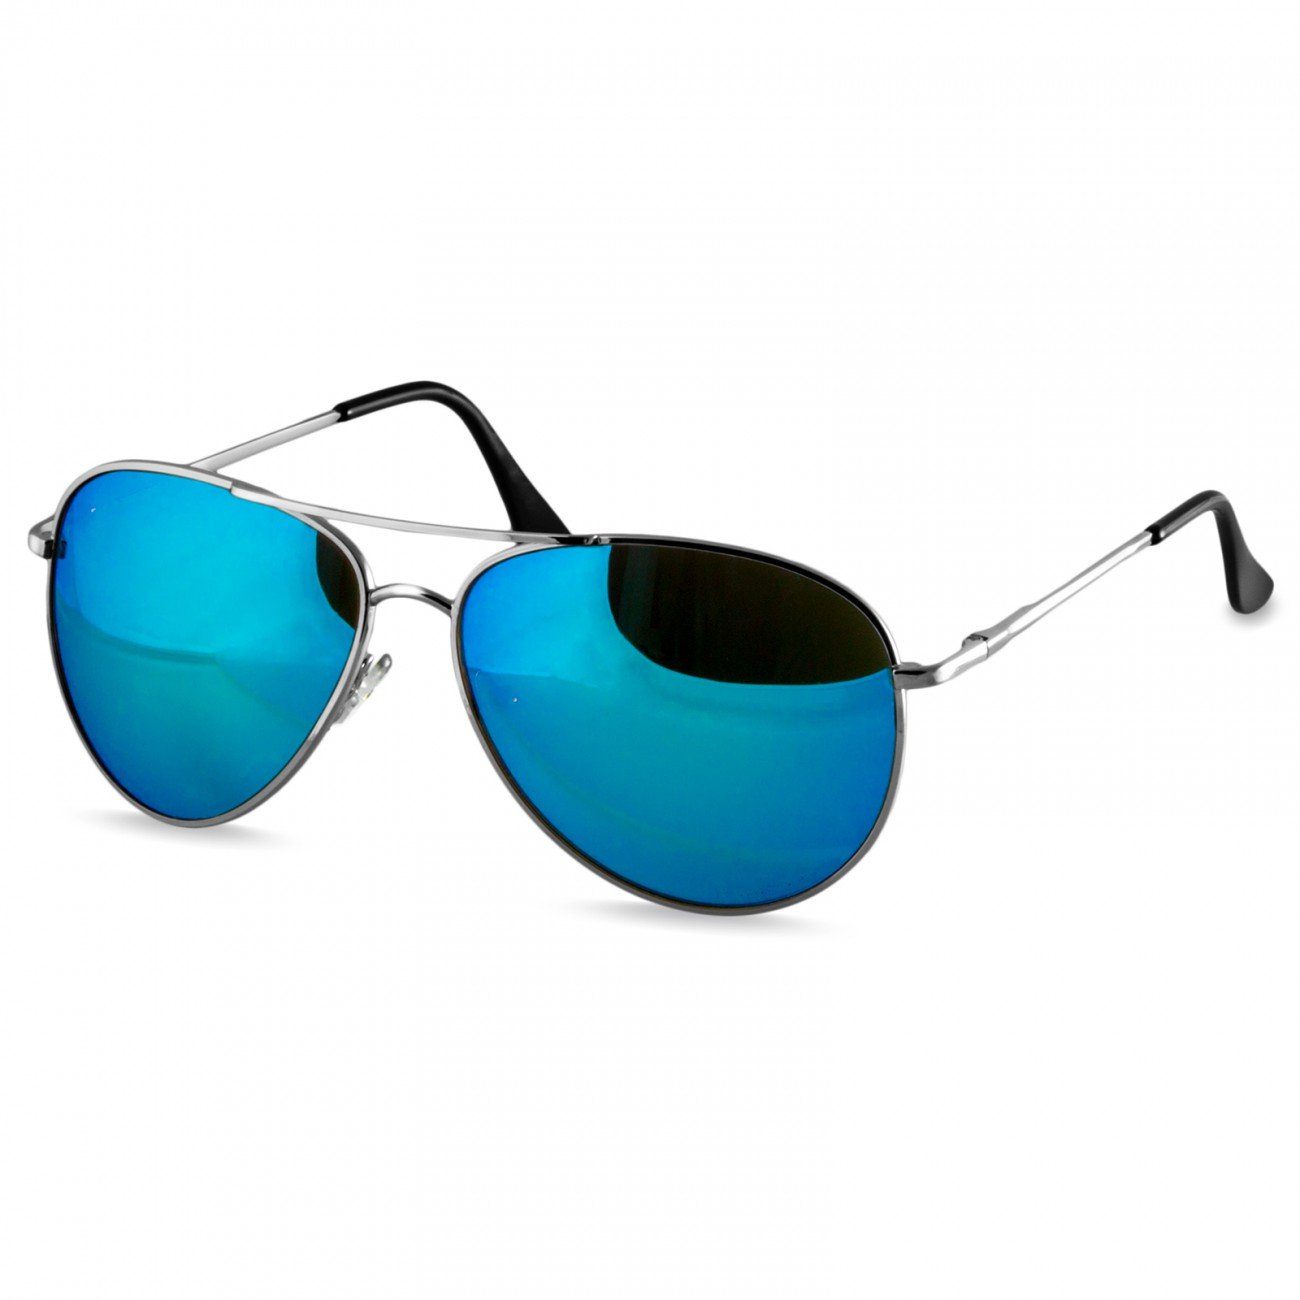 Caspar Sonnenbrille SG013 klassische Unisex Retro Pilotenbrille silber / hellblau verspiegelt | Sonnenbrillen